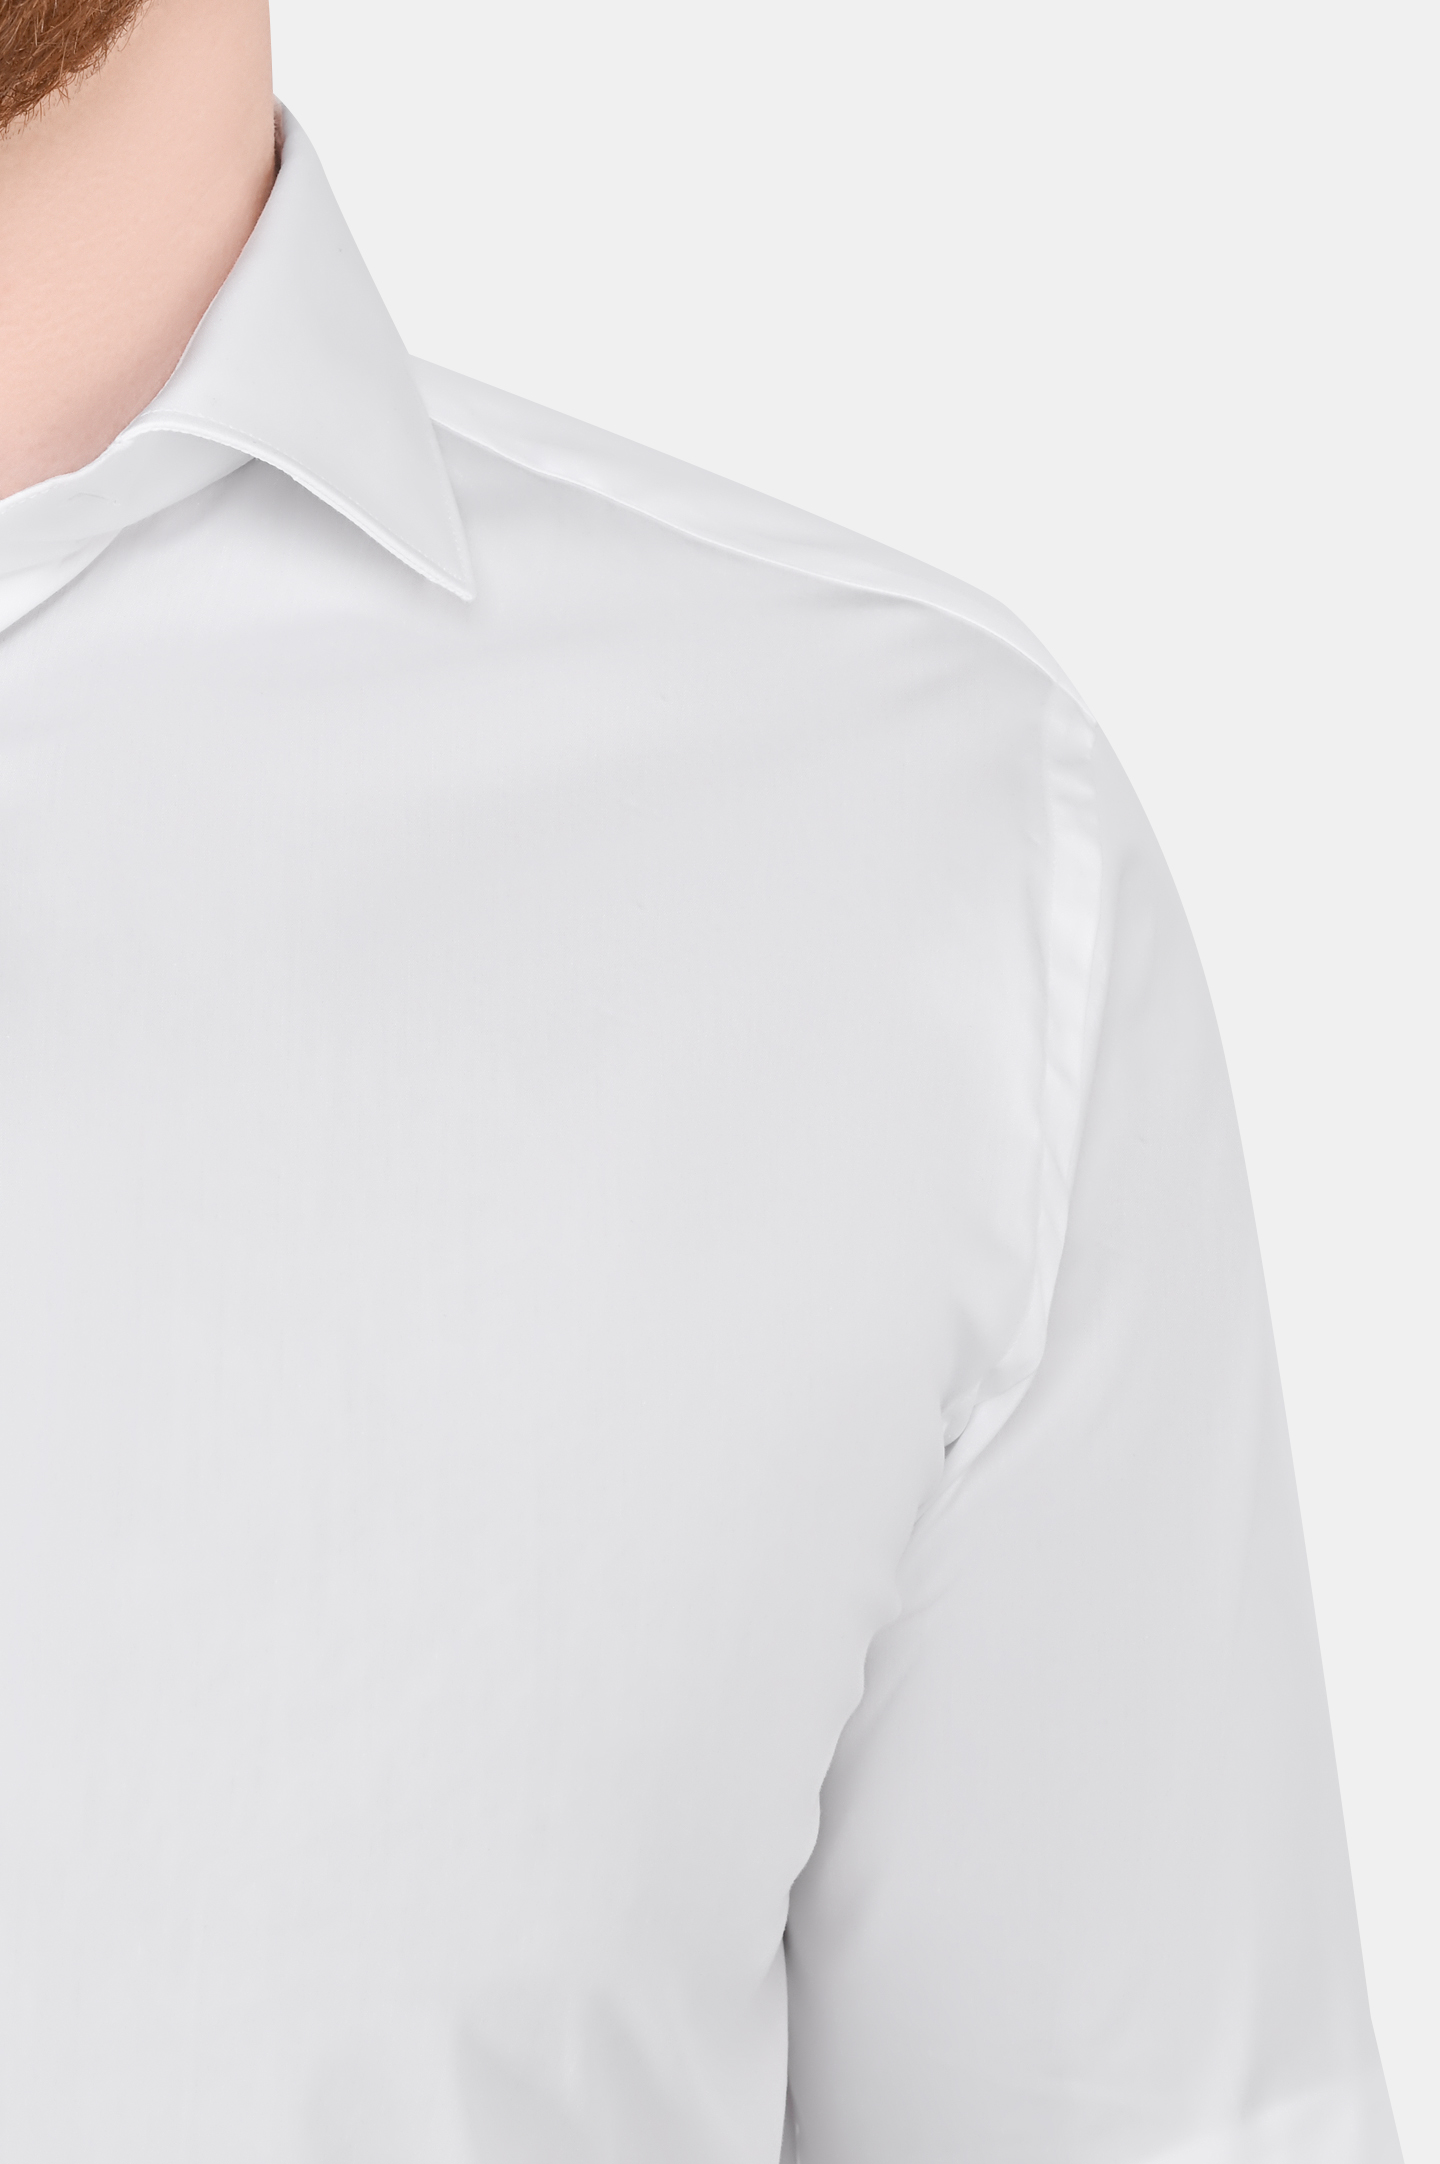 Рубашка из смеси хлопка, полиамида и эластана CANALI GA01222 7C3, цвет: Белый, Мужской